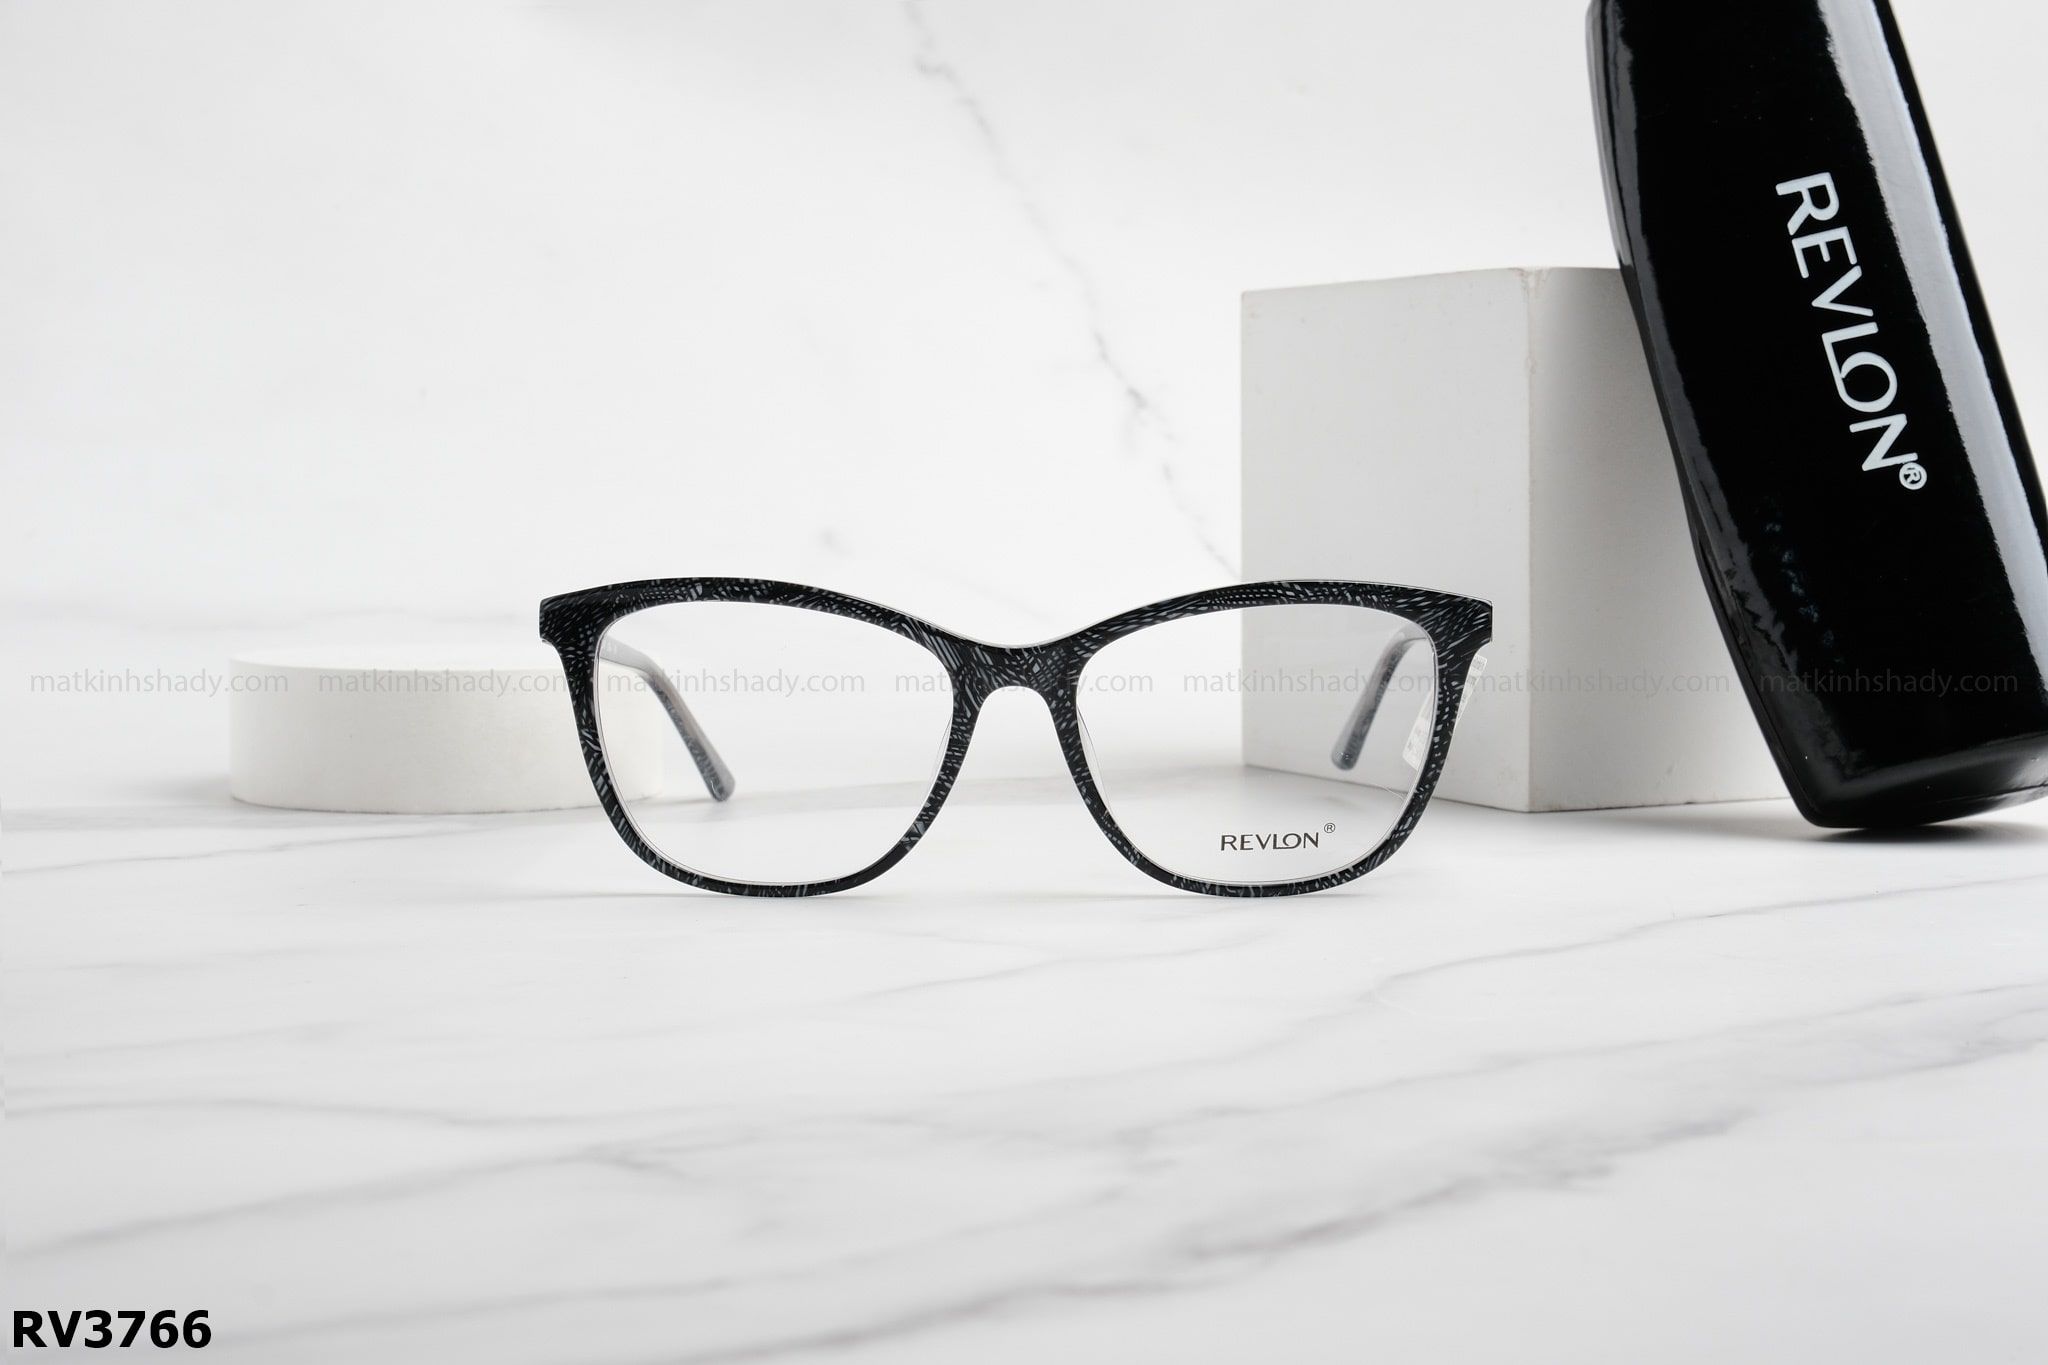  Revlon Eyewear - Glasses - RV3766 